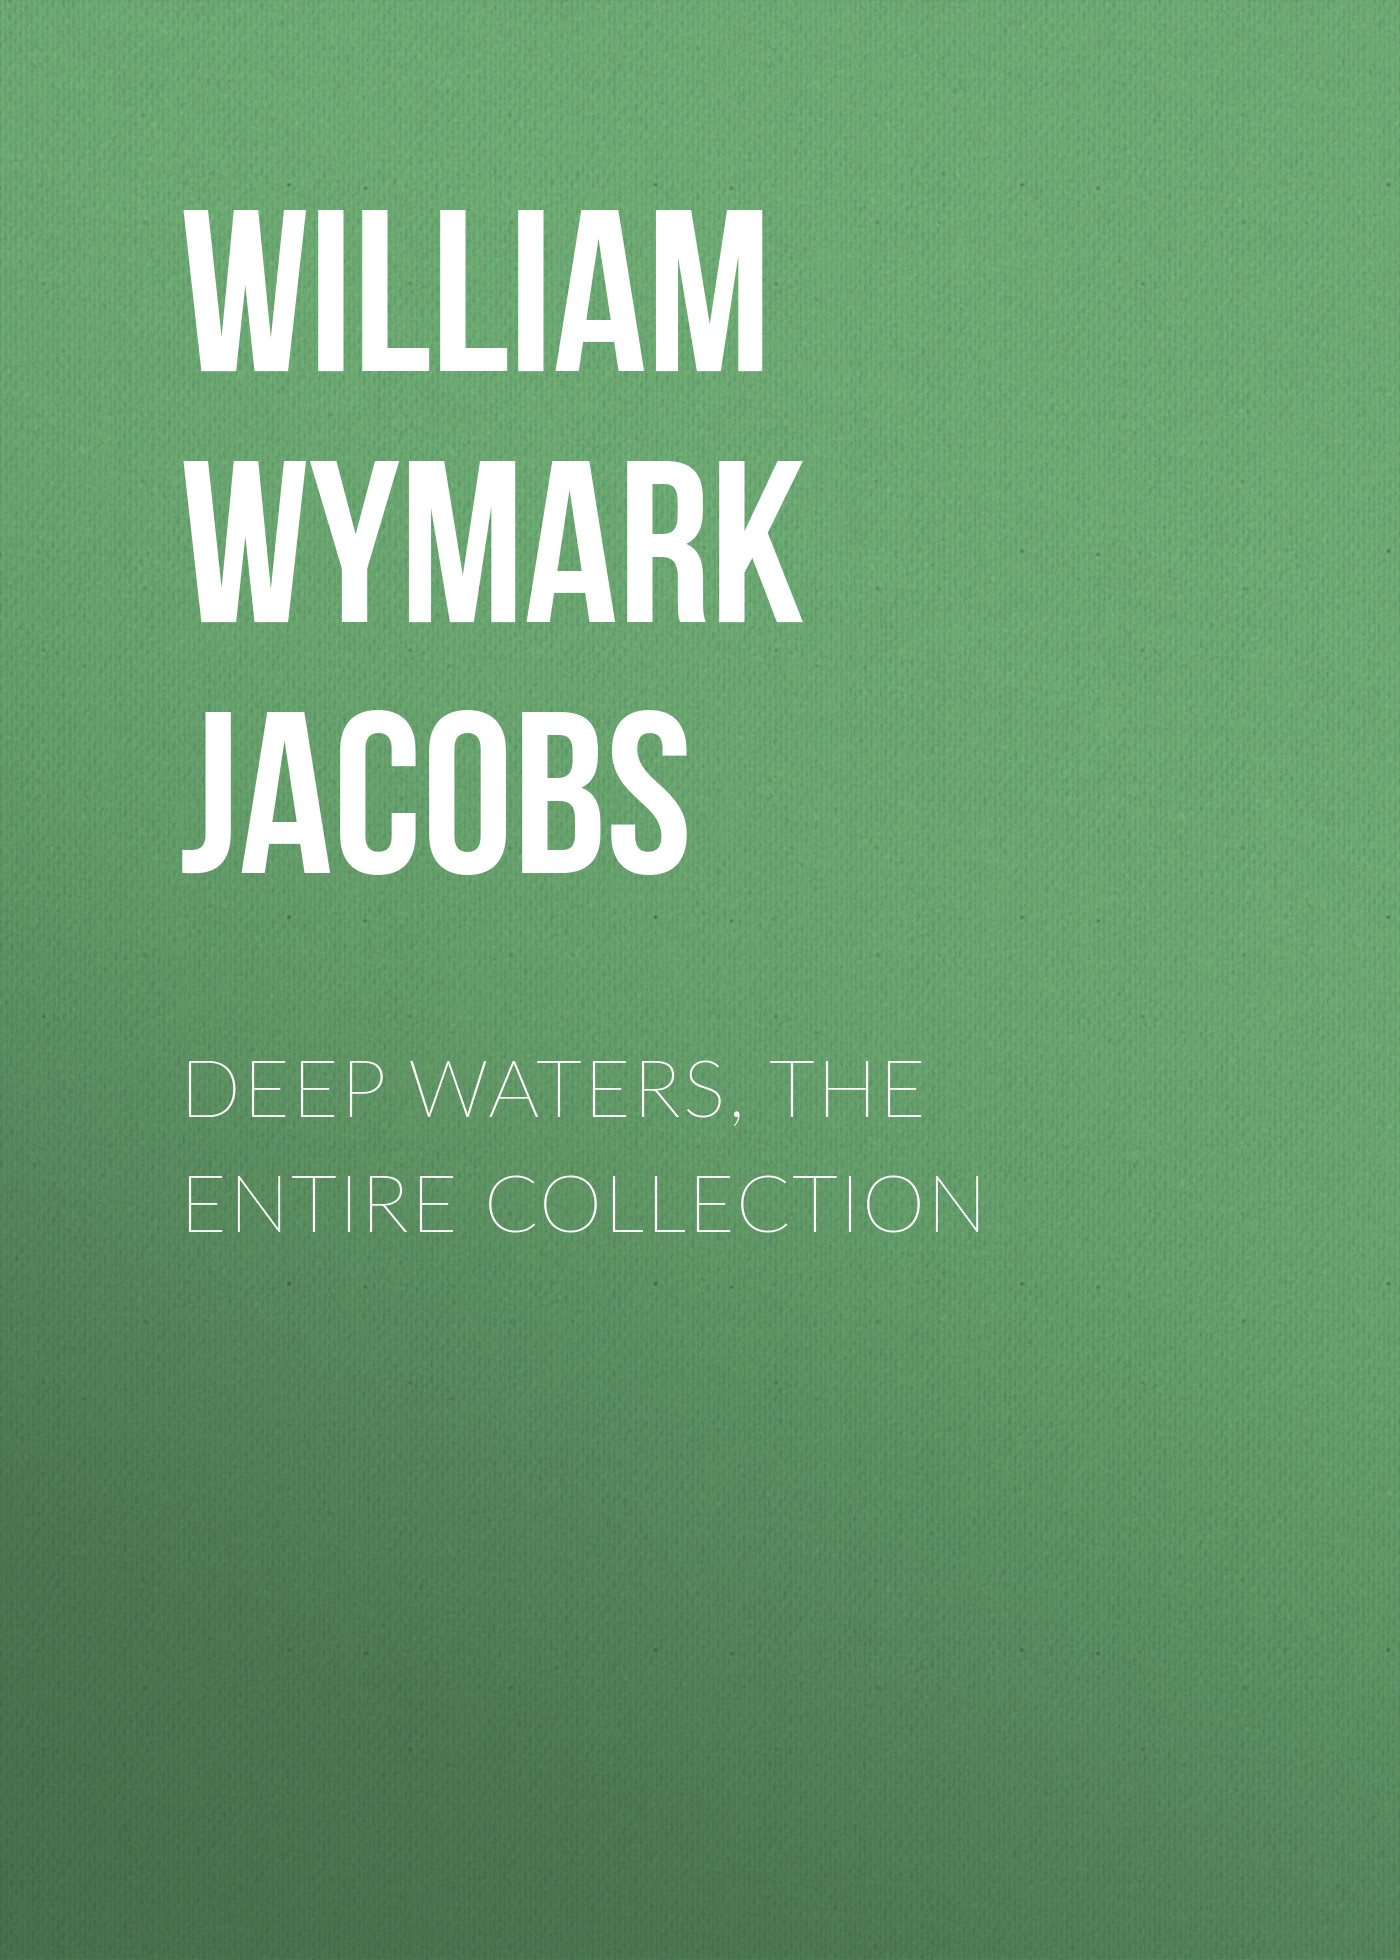 Книга Deep Waters, the Entire Collection из серии , созданная William Wymark Jacobs, может относится к жанру Зарубежный юмор, Зарубежная старинная литература, Зарубежная классика. Стоимость электронной книги Deep Waters, the Entire Collection с идентификатором 34843462 составляет 0 руб.